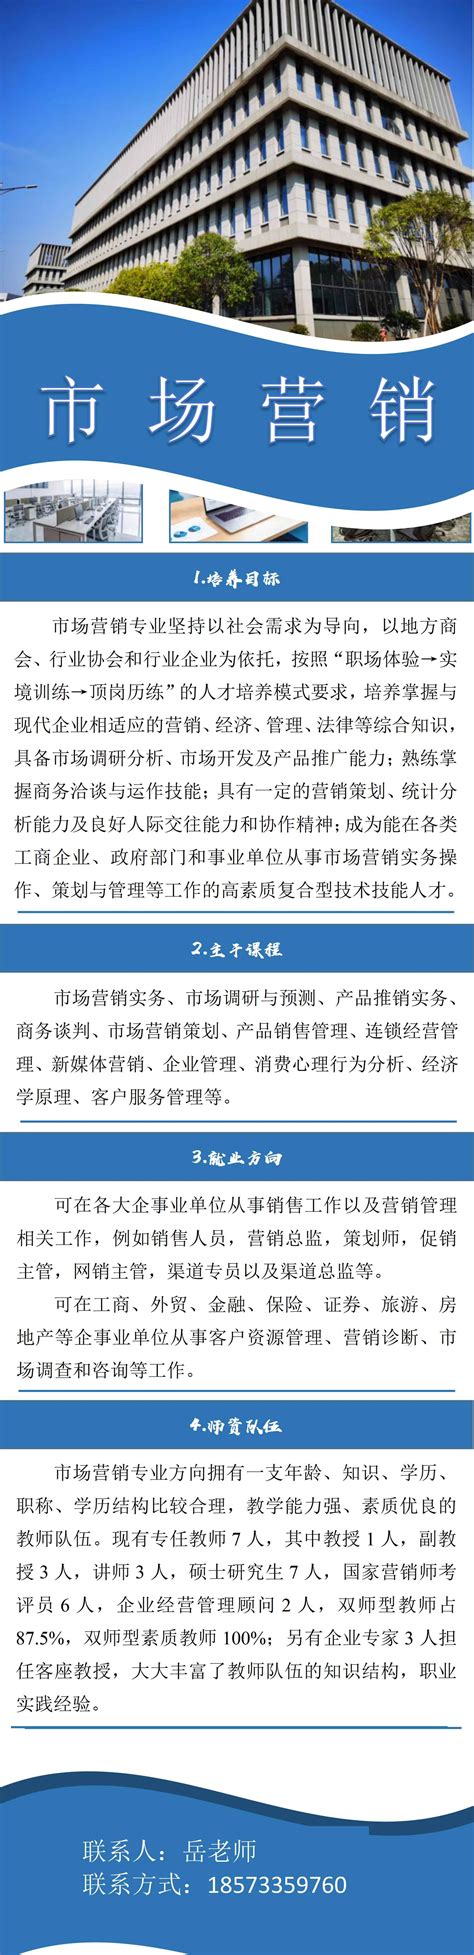 好地专稿：上海金山区的精益之路（附首批2宗挂牌宅地解读）_好地网